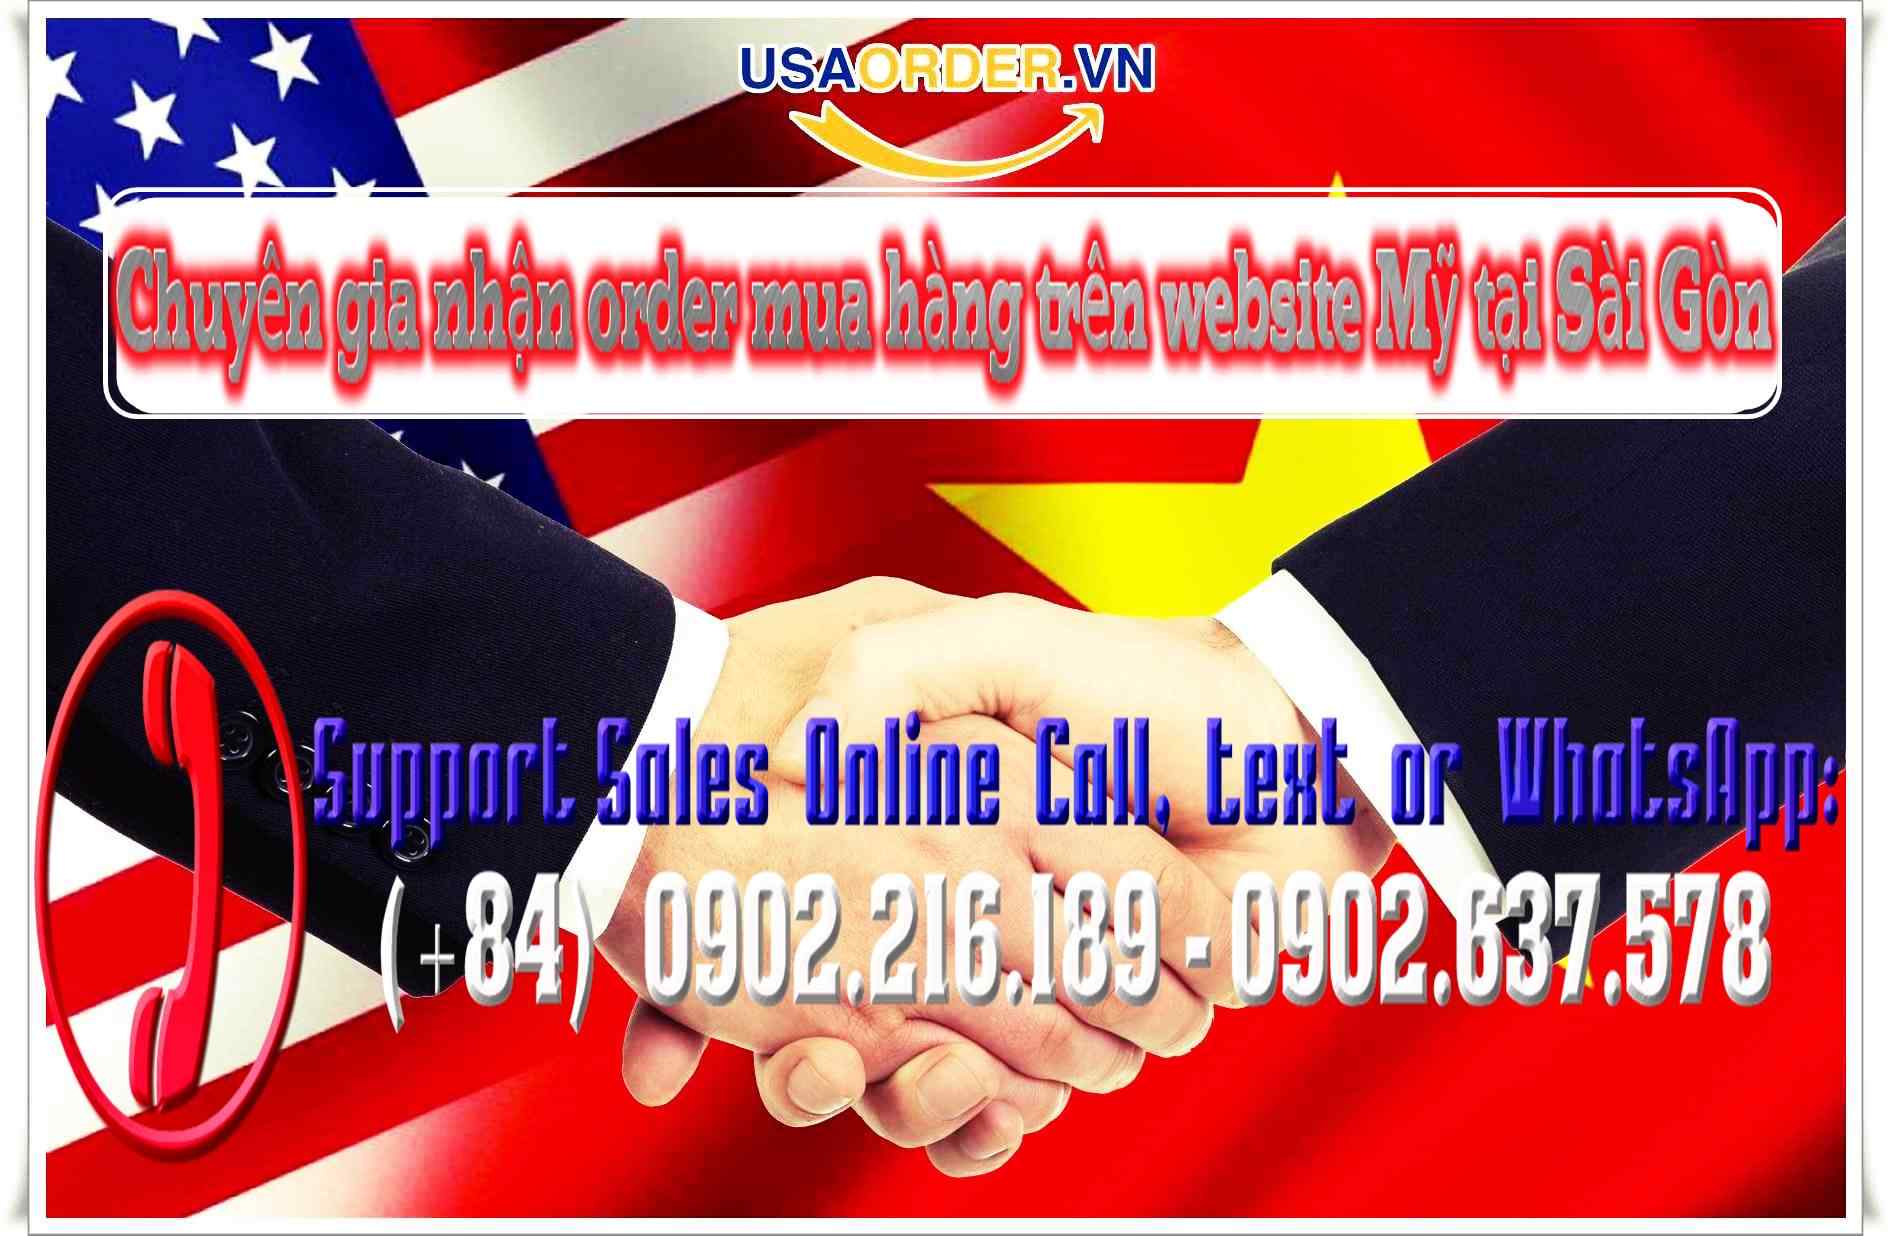 Chuyên gia nhận order mua hàng trên website Mỹ tại Sài Gòn